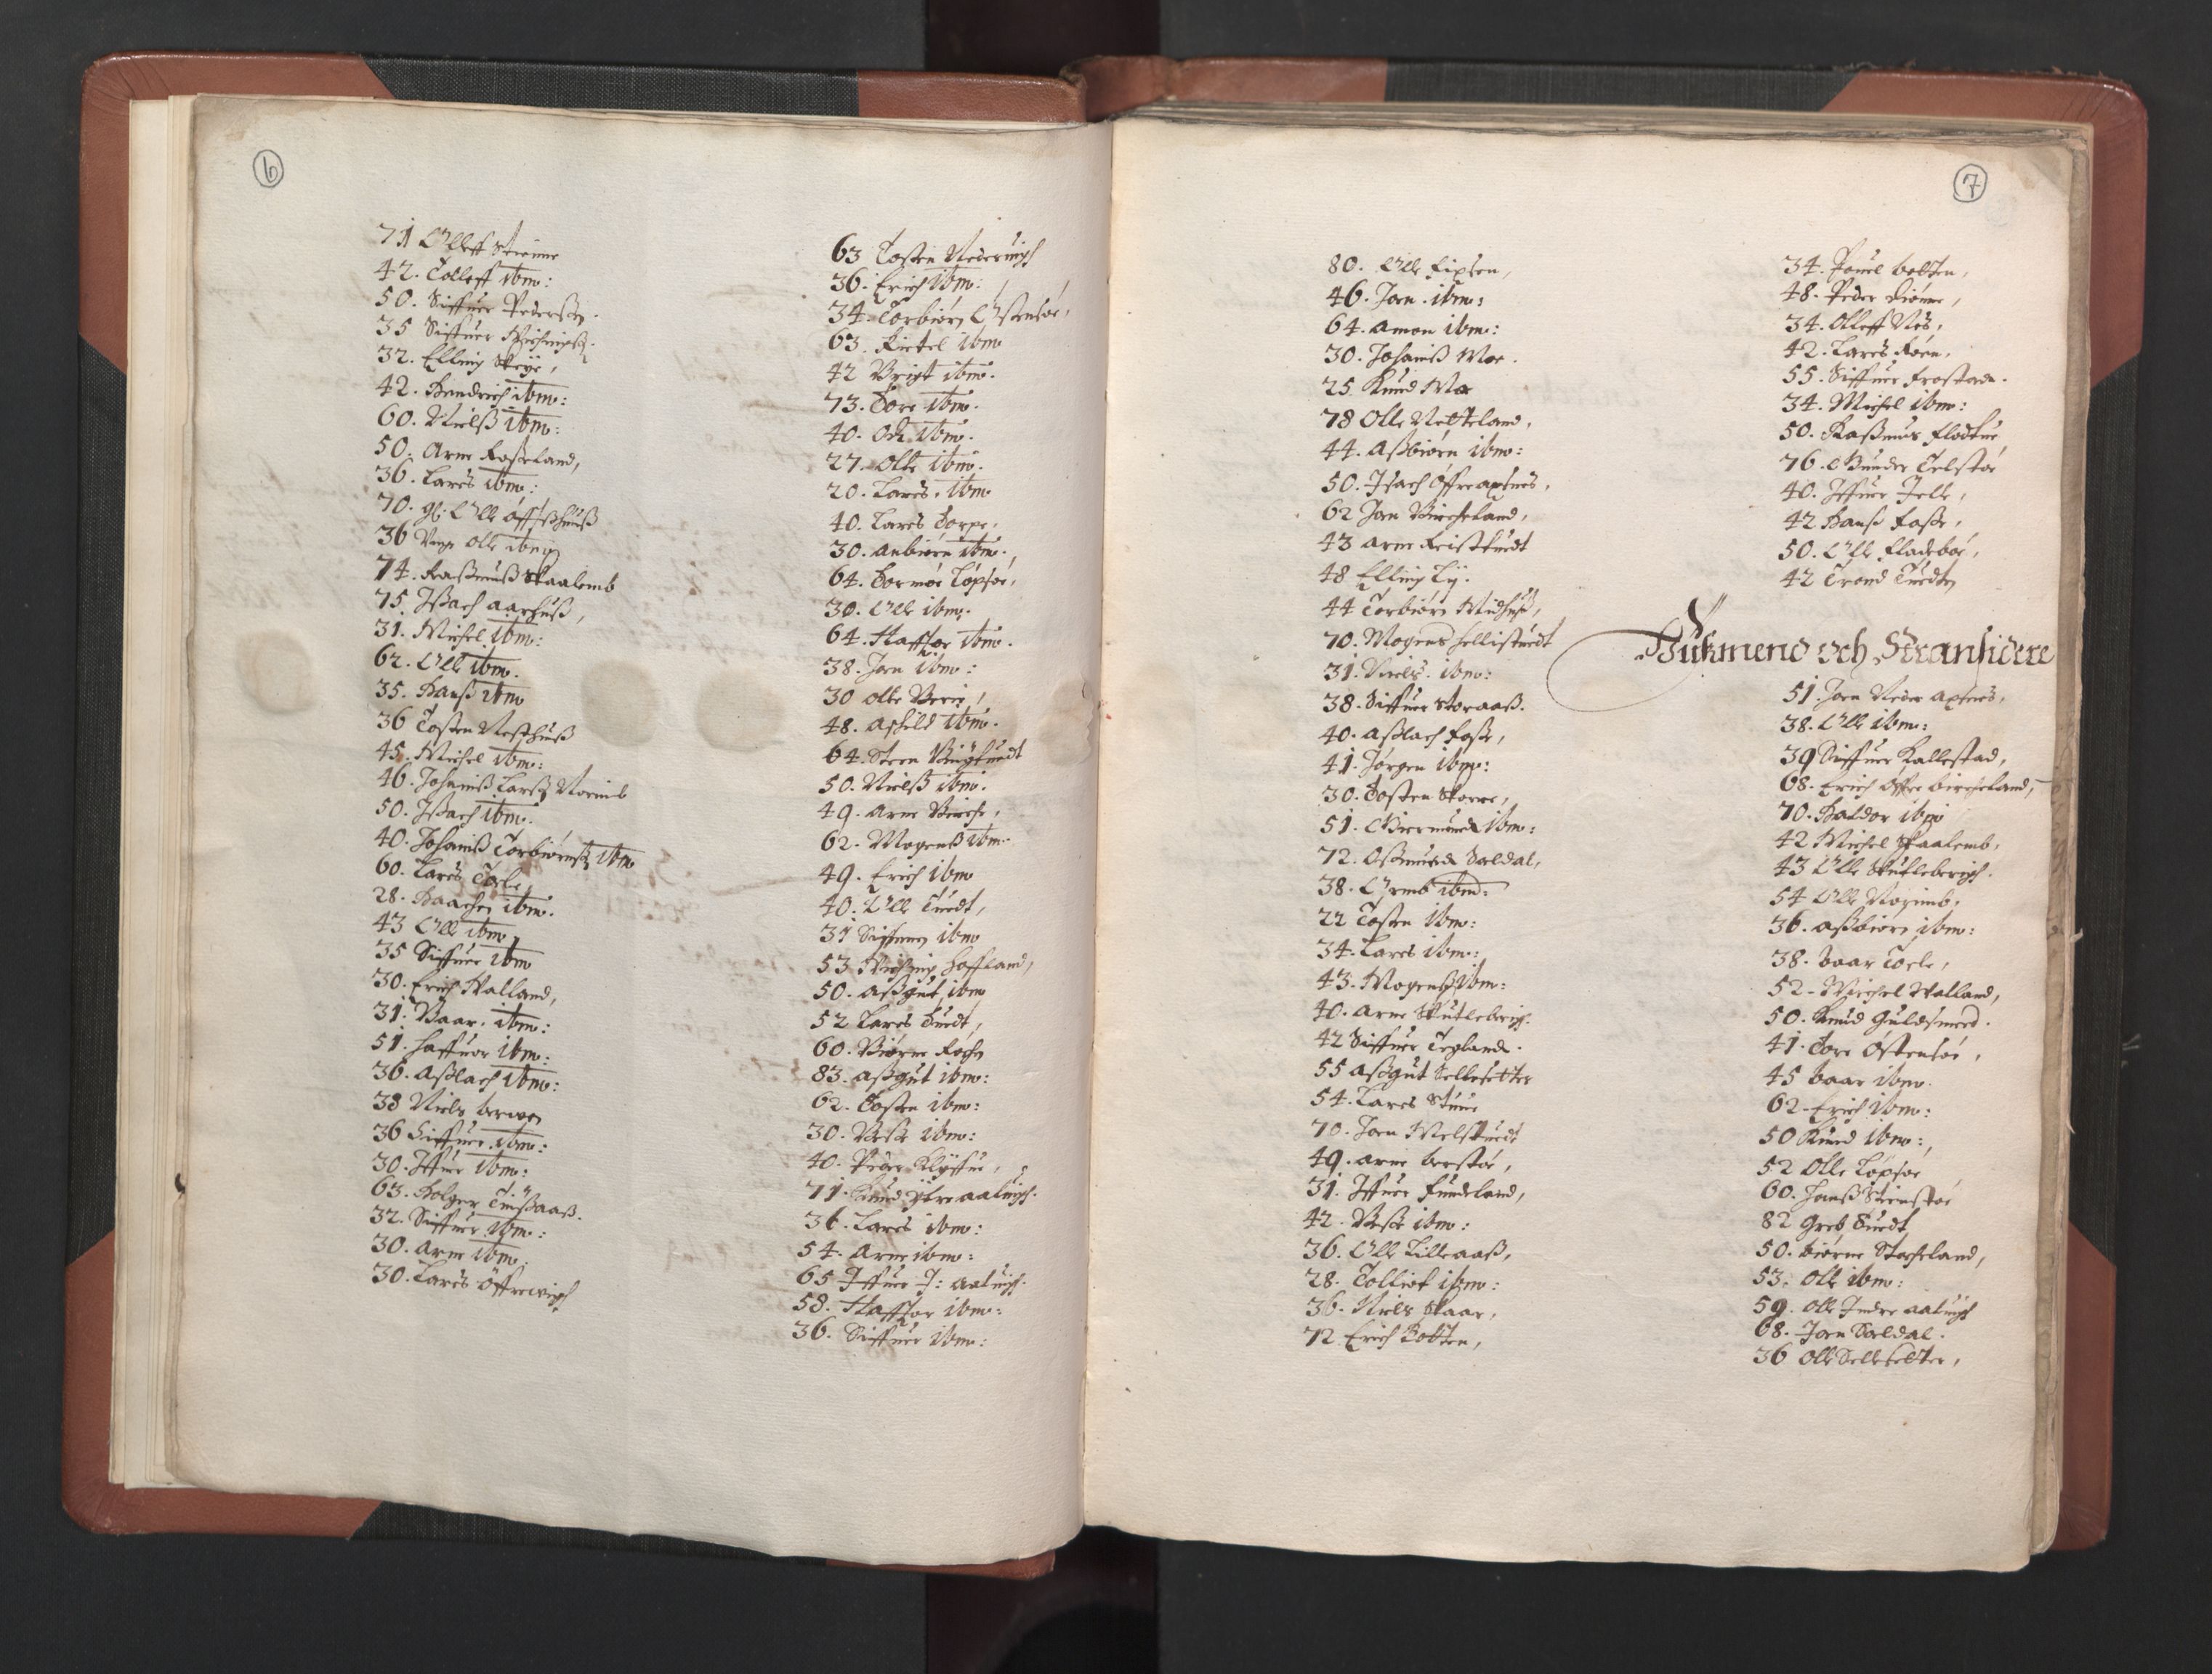 RA, Bailiff's Census 1664-1666, no. 14: Hardanger len, Ytre Sogn fogderi and Indre Sogn fogderi, 1664-1665, p. 6-7